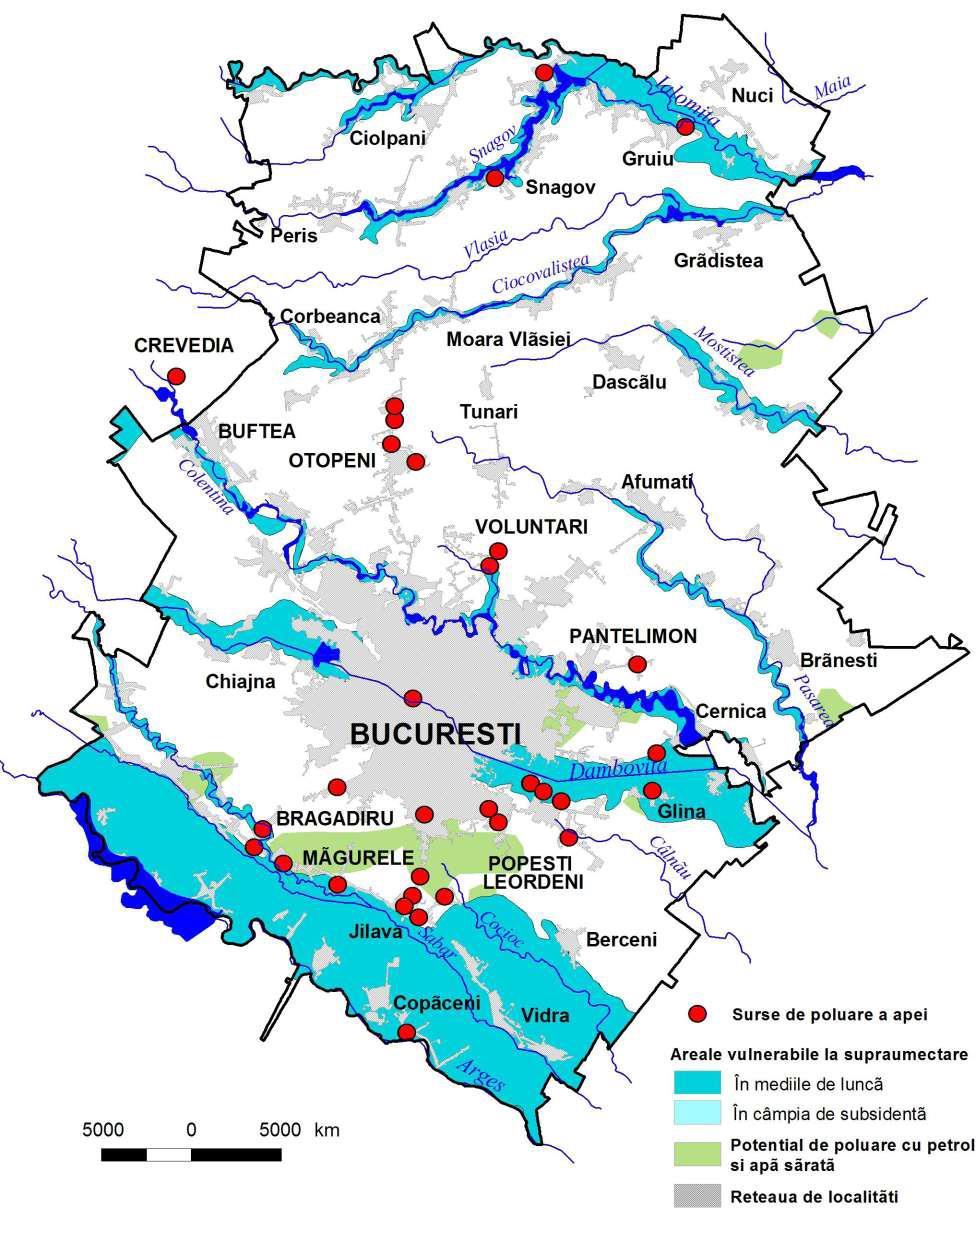 Fig. 94. Riscuri tehnologice de poluare a apei, în regiunea Bucureşti Ilfov. Sursa: PAAR Ilfov 2011, Anexa 22 Harţi pe tipuri de risc F.